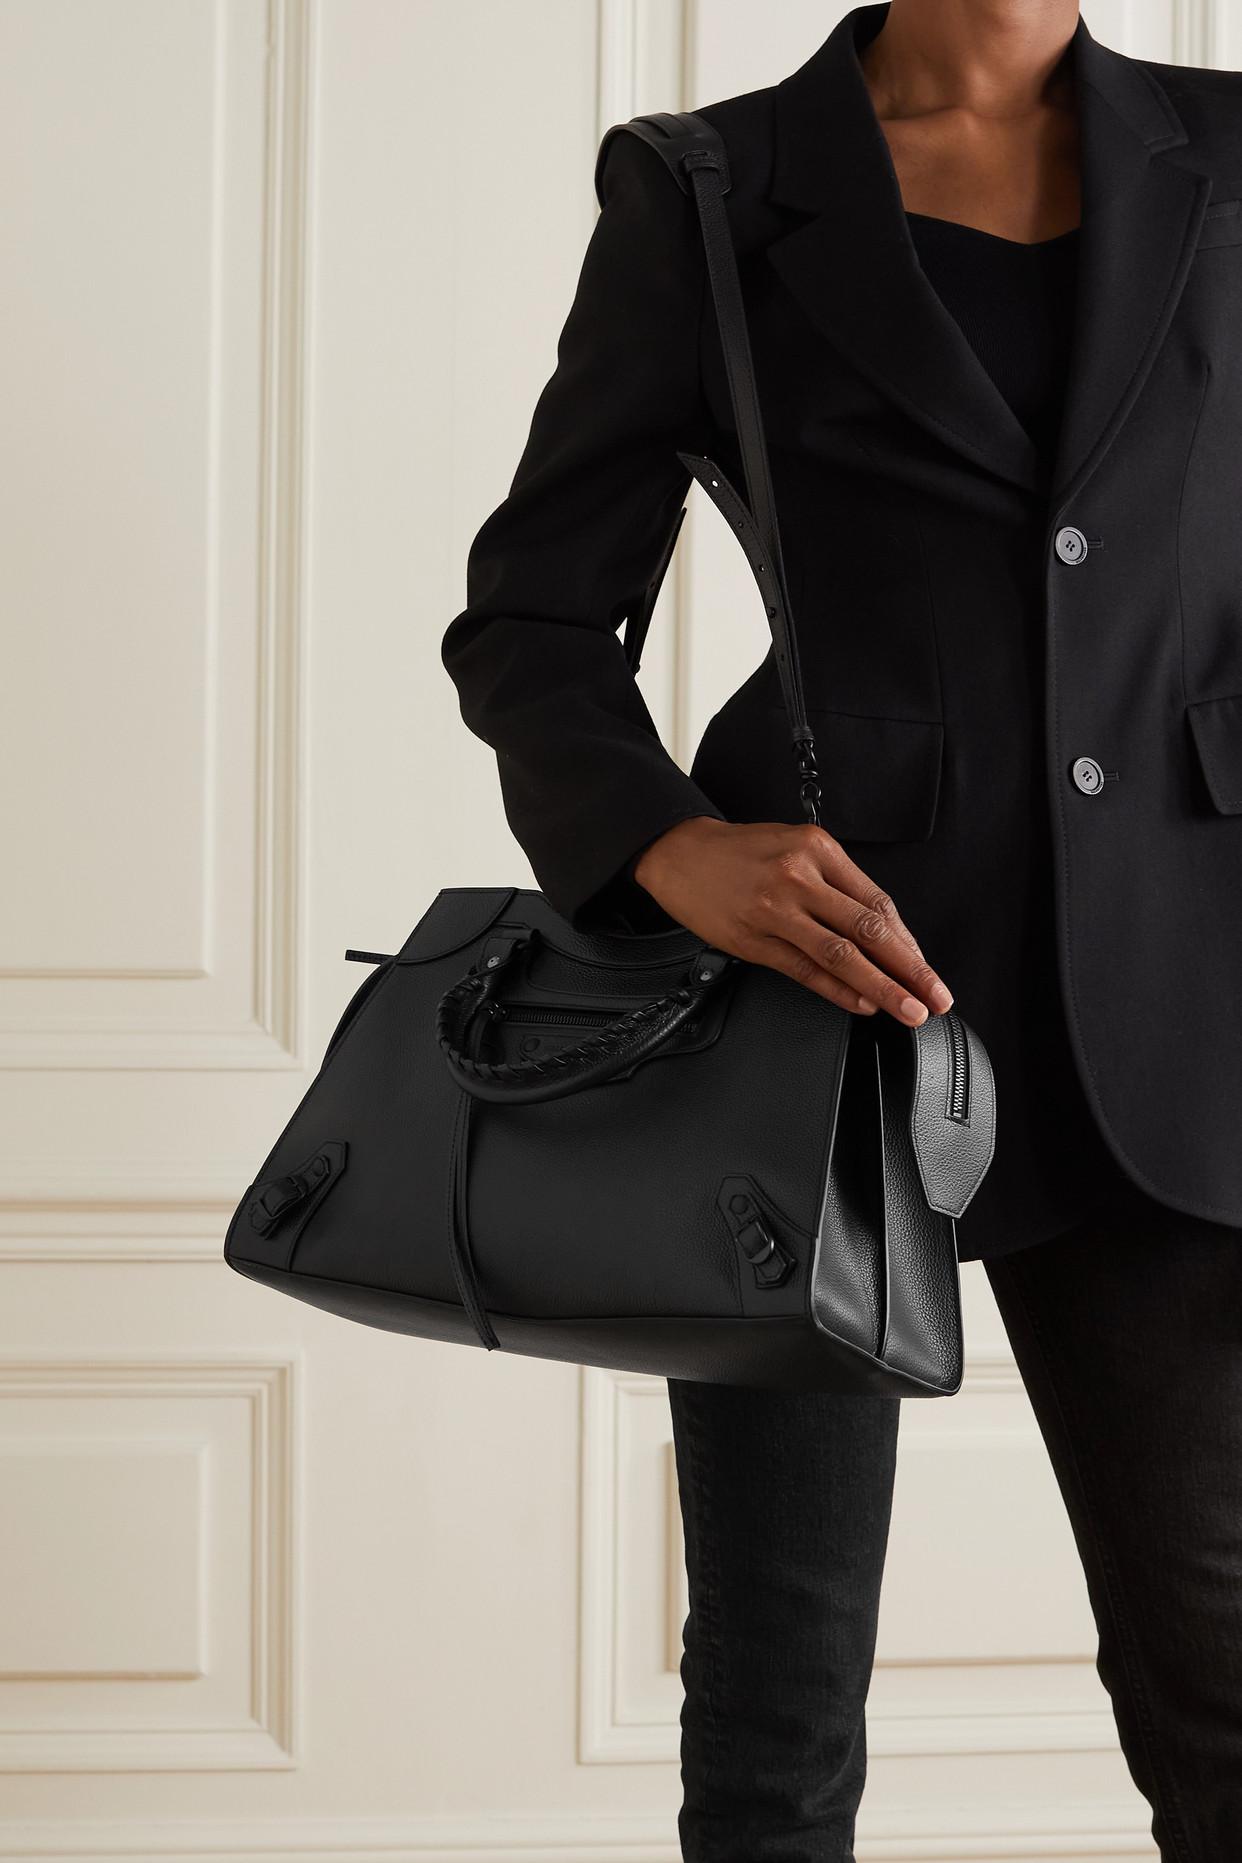 Neo Classic Medium Handbag in Dark Grey  Balenciaga US